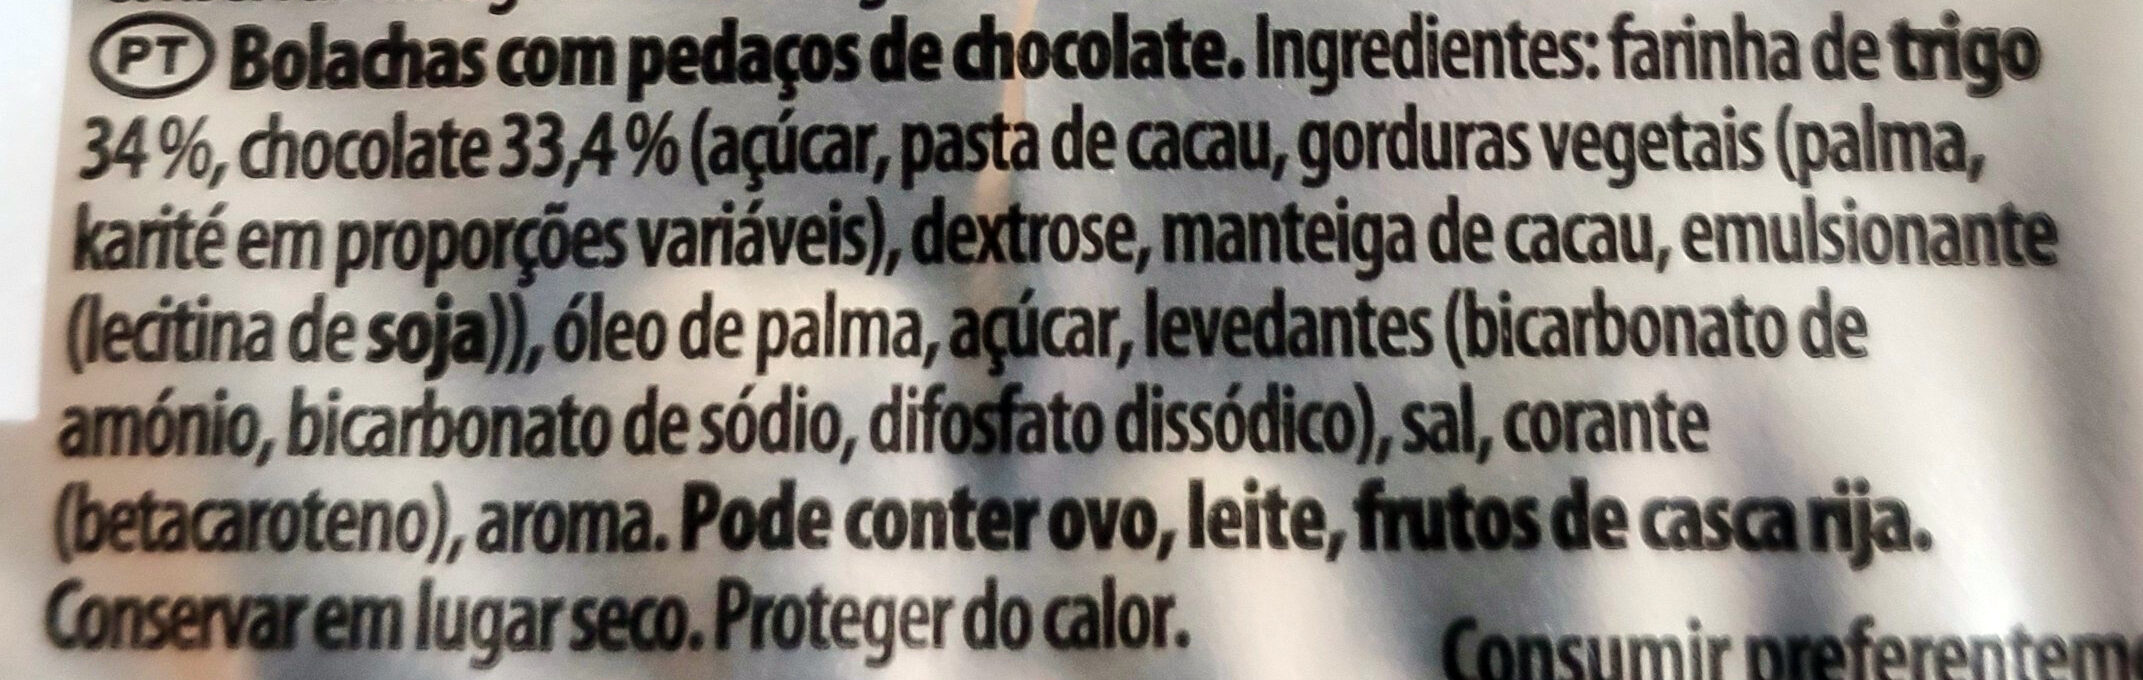 Extra galletas con pepitas xl de chocolate - Ingredientes